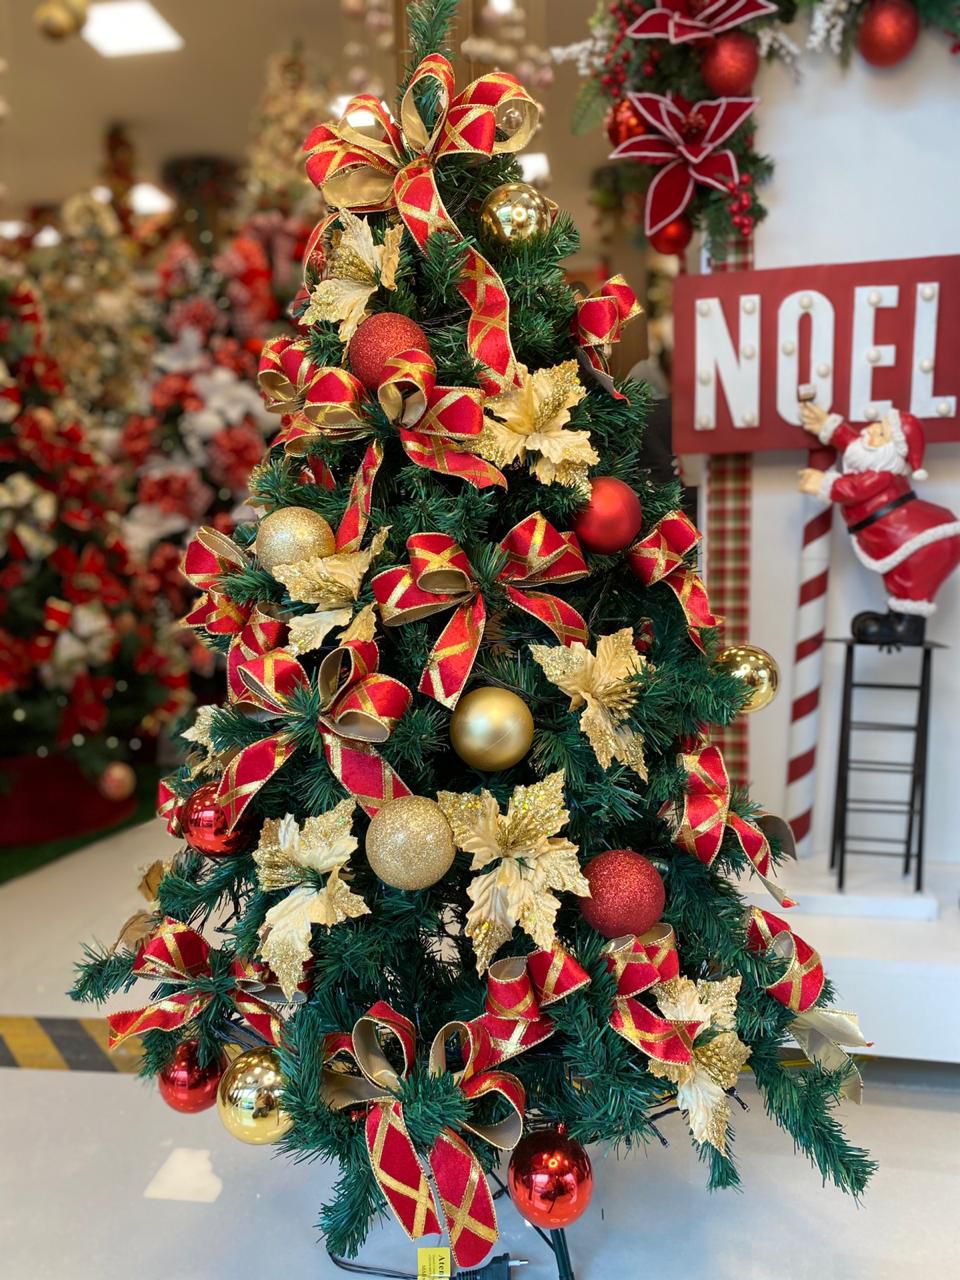 Descubra Os Segredos Da Decoração De Natal: Árvore Vermelha E Dourada,  arvore de natal decoração - thirstymag.com